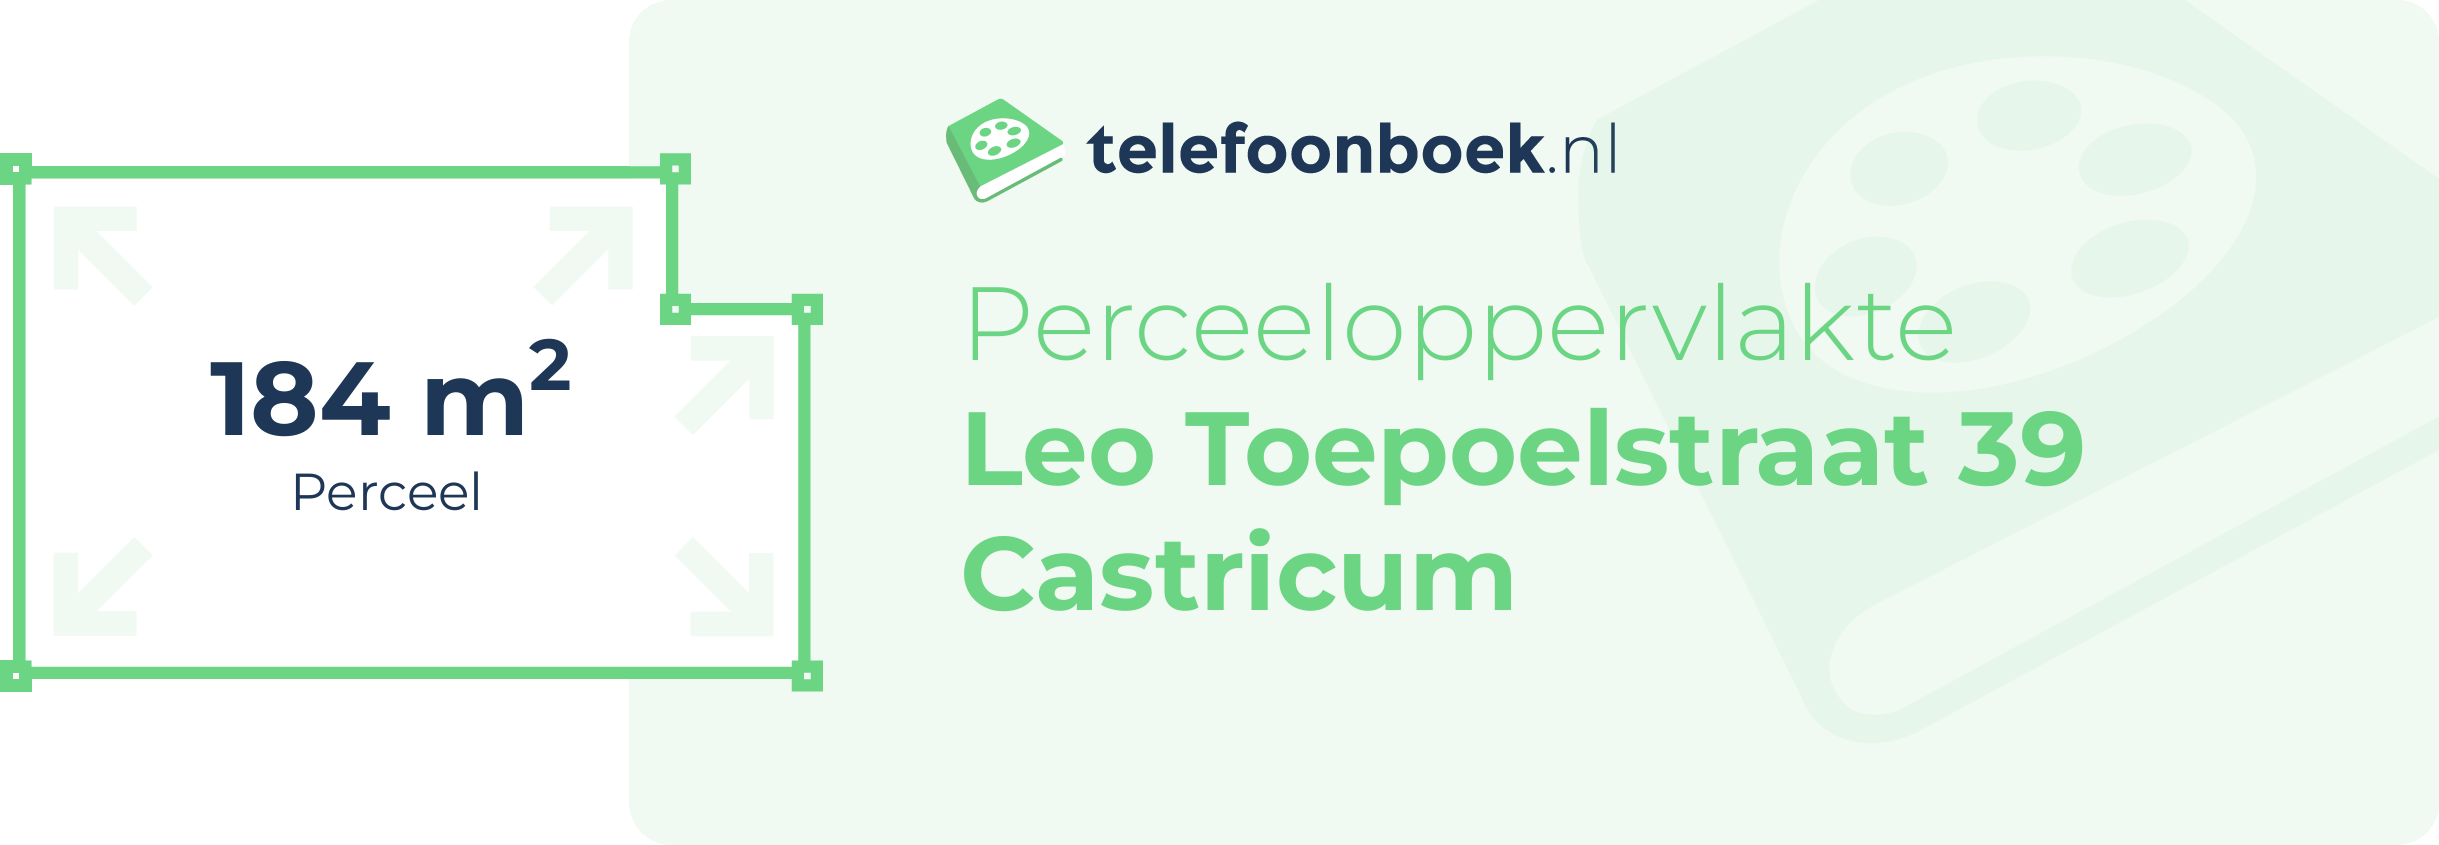 Perceeloppervlakte Leo Toepoelstraat 39 Castricum